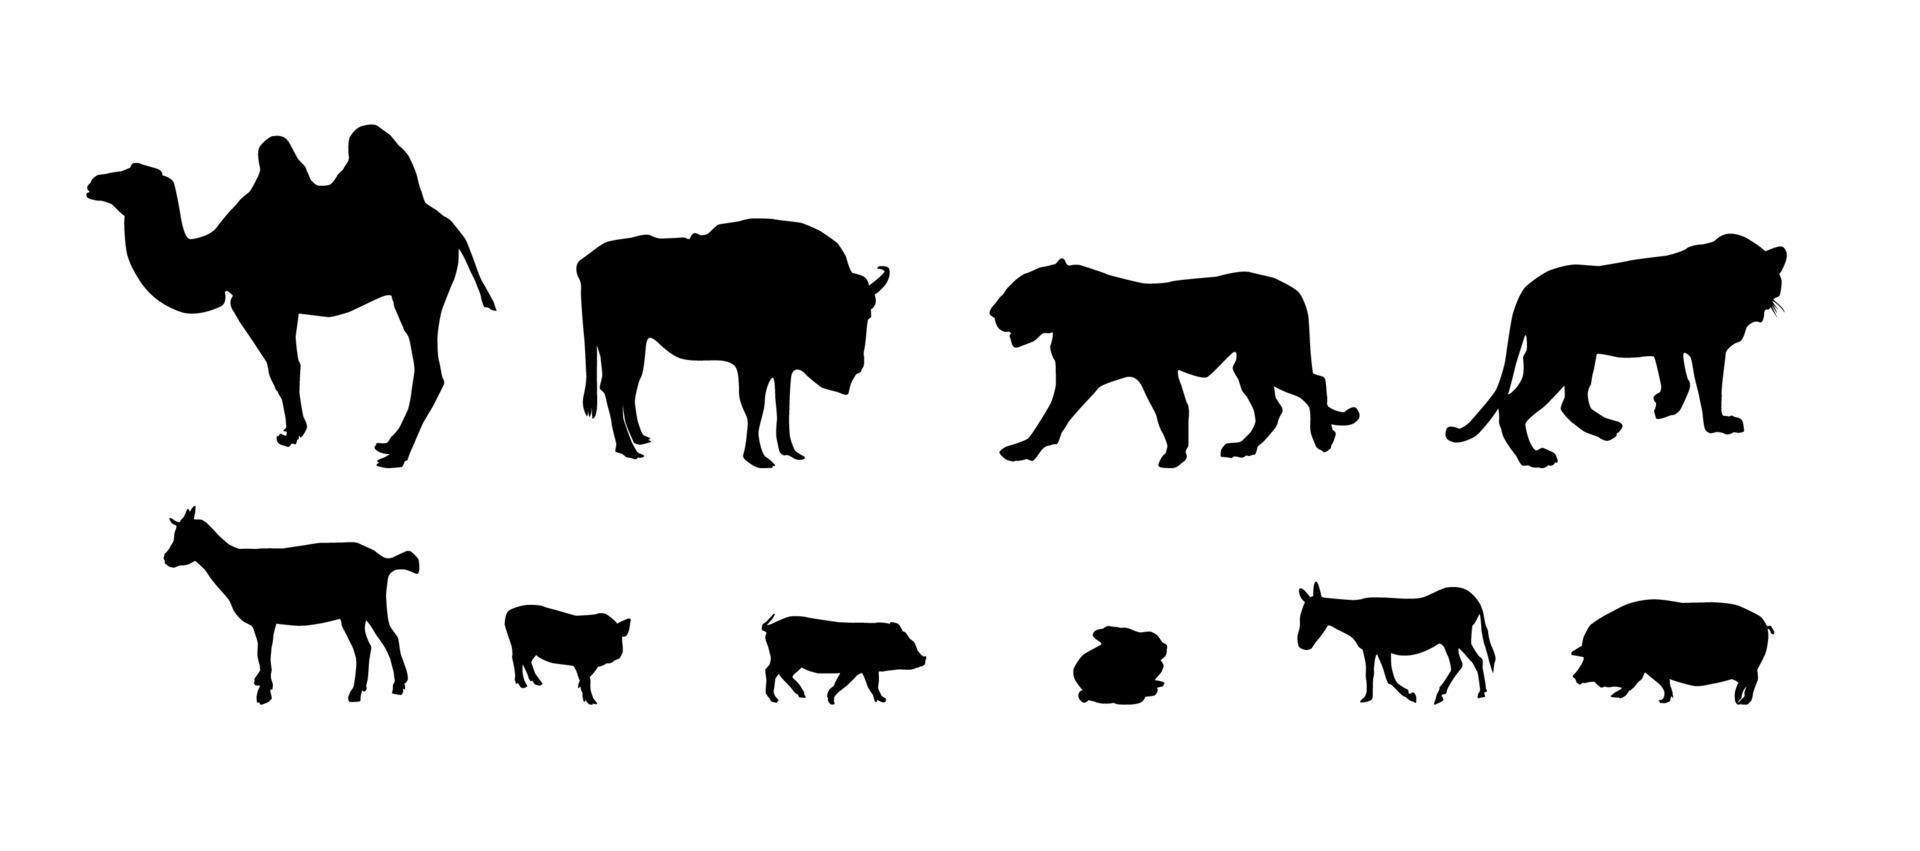 silueta de animales salvajes y domésticos. en blanco y negro vector